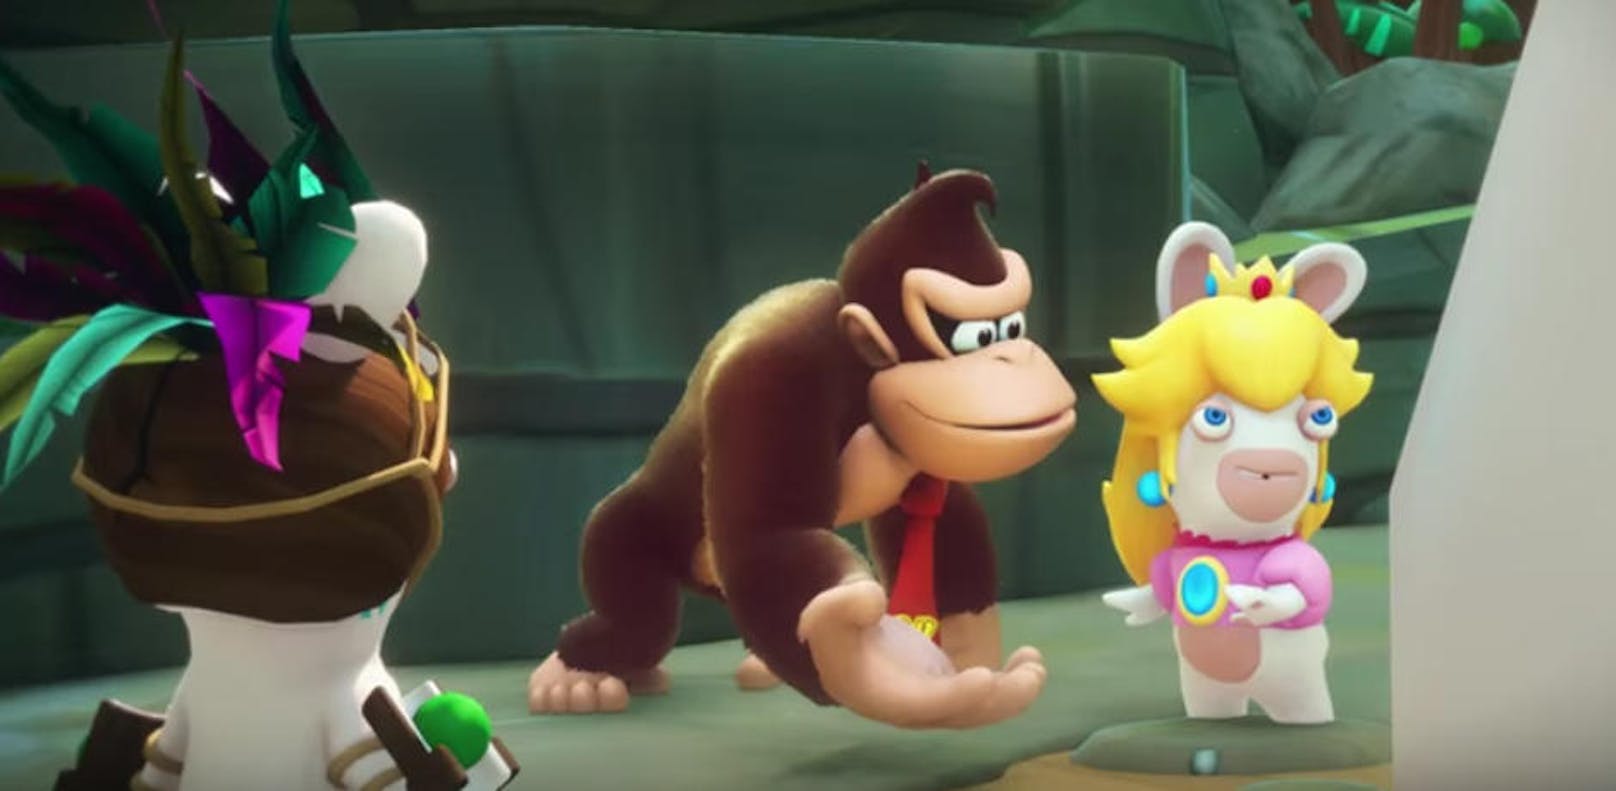 Mario + Rabbids Kingdom Battle für Nintendo Switch heißt einen neuen spielbaren Helden willkommen. Donkey Kong wird mit dem bevorstehenden DLC erscheinen und dabei eine originelle Handlung in einer brandneuen Welt mit sich bringen. Donkey Kong wird Teil eines neuen Abenteuers sein, das im Frühling 2018 erscheint. <a href="Einen ersten Trailer gibt es hier.">https://www.youtube.com/watch?v=oieYXUPo_VU&feature=youtu.be</a>